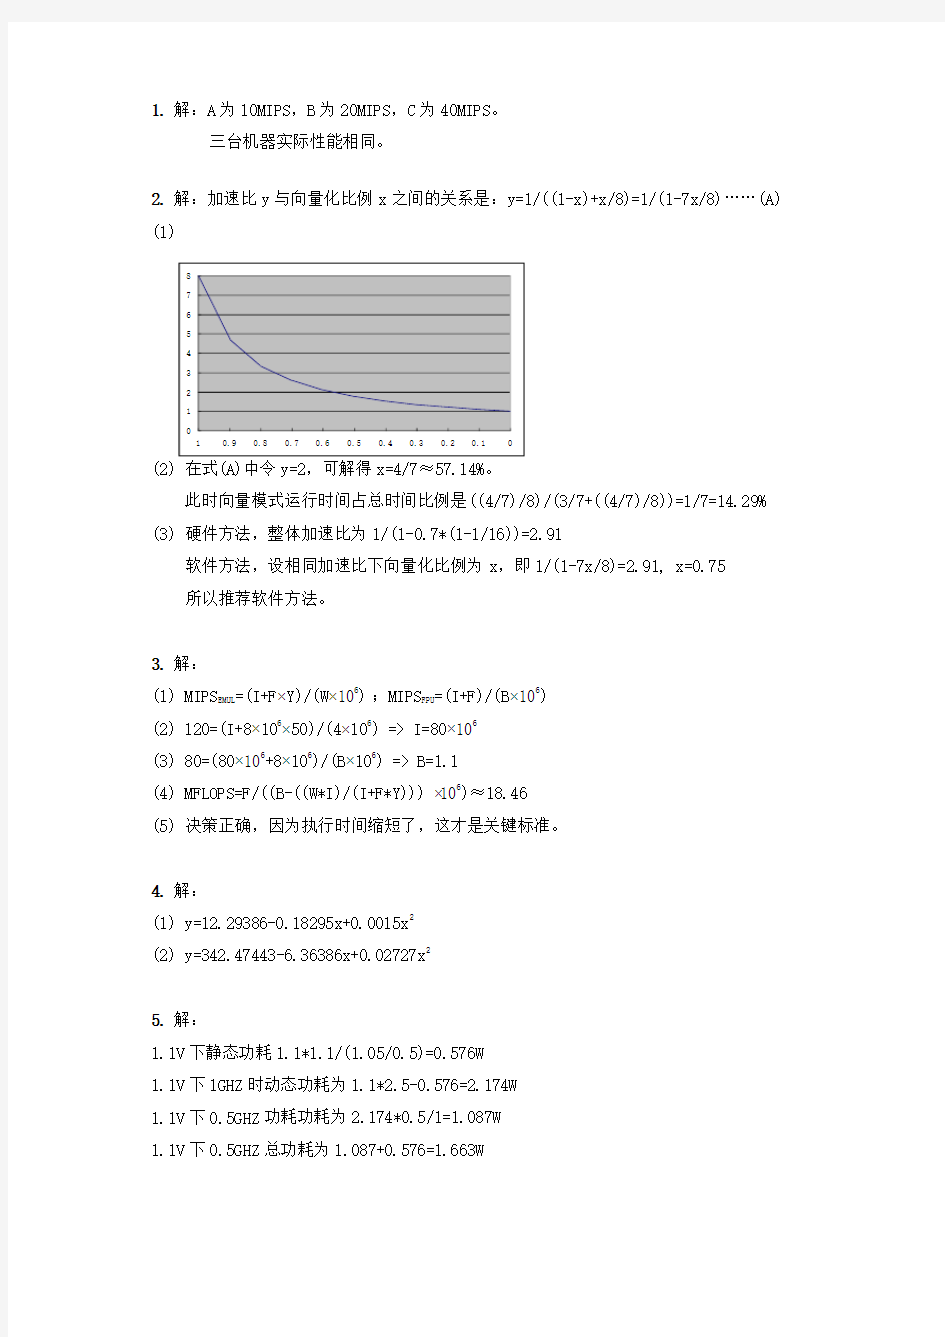 计算机系统结构(中科院 胡伟武 2016)课后习题答案 第二章